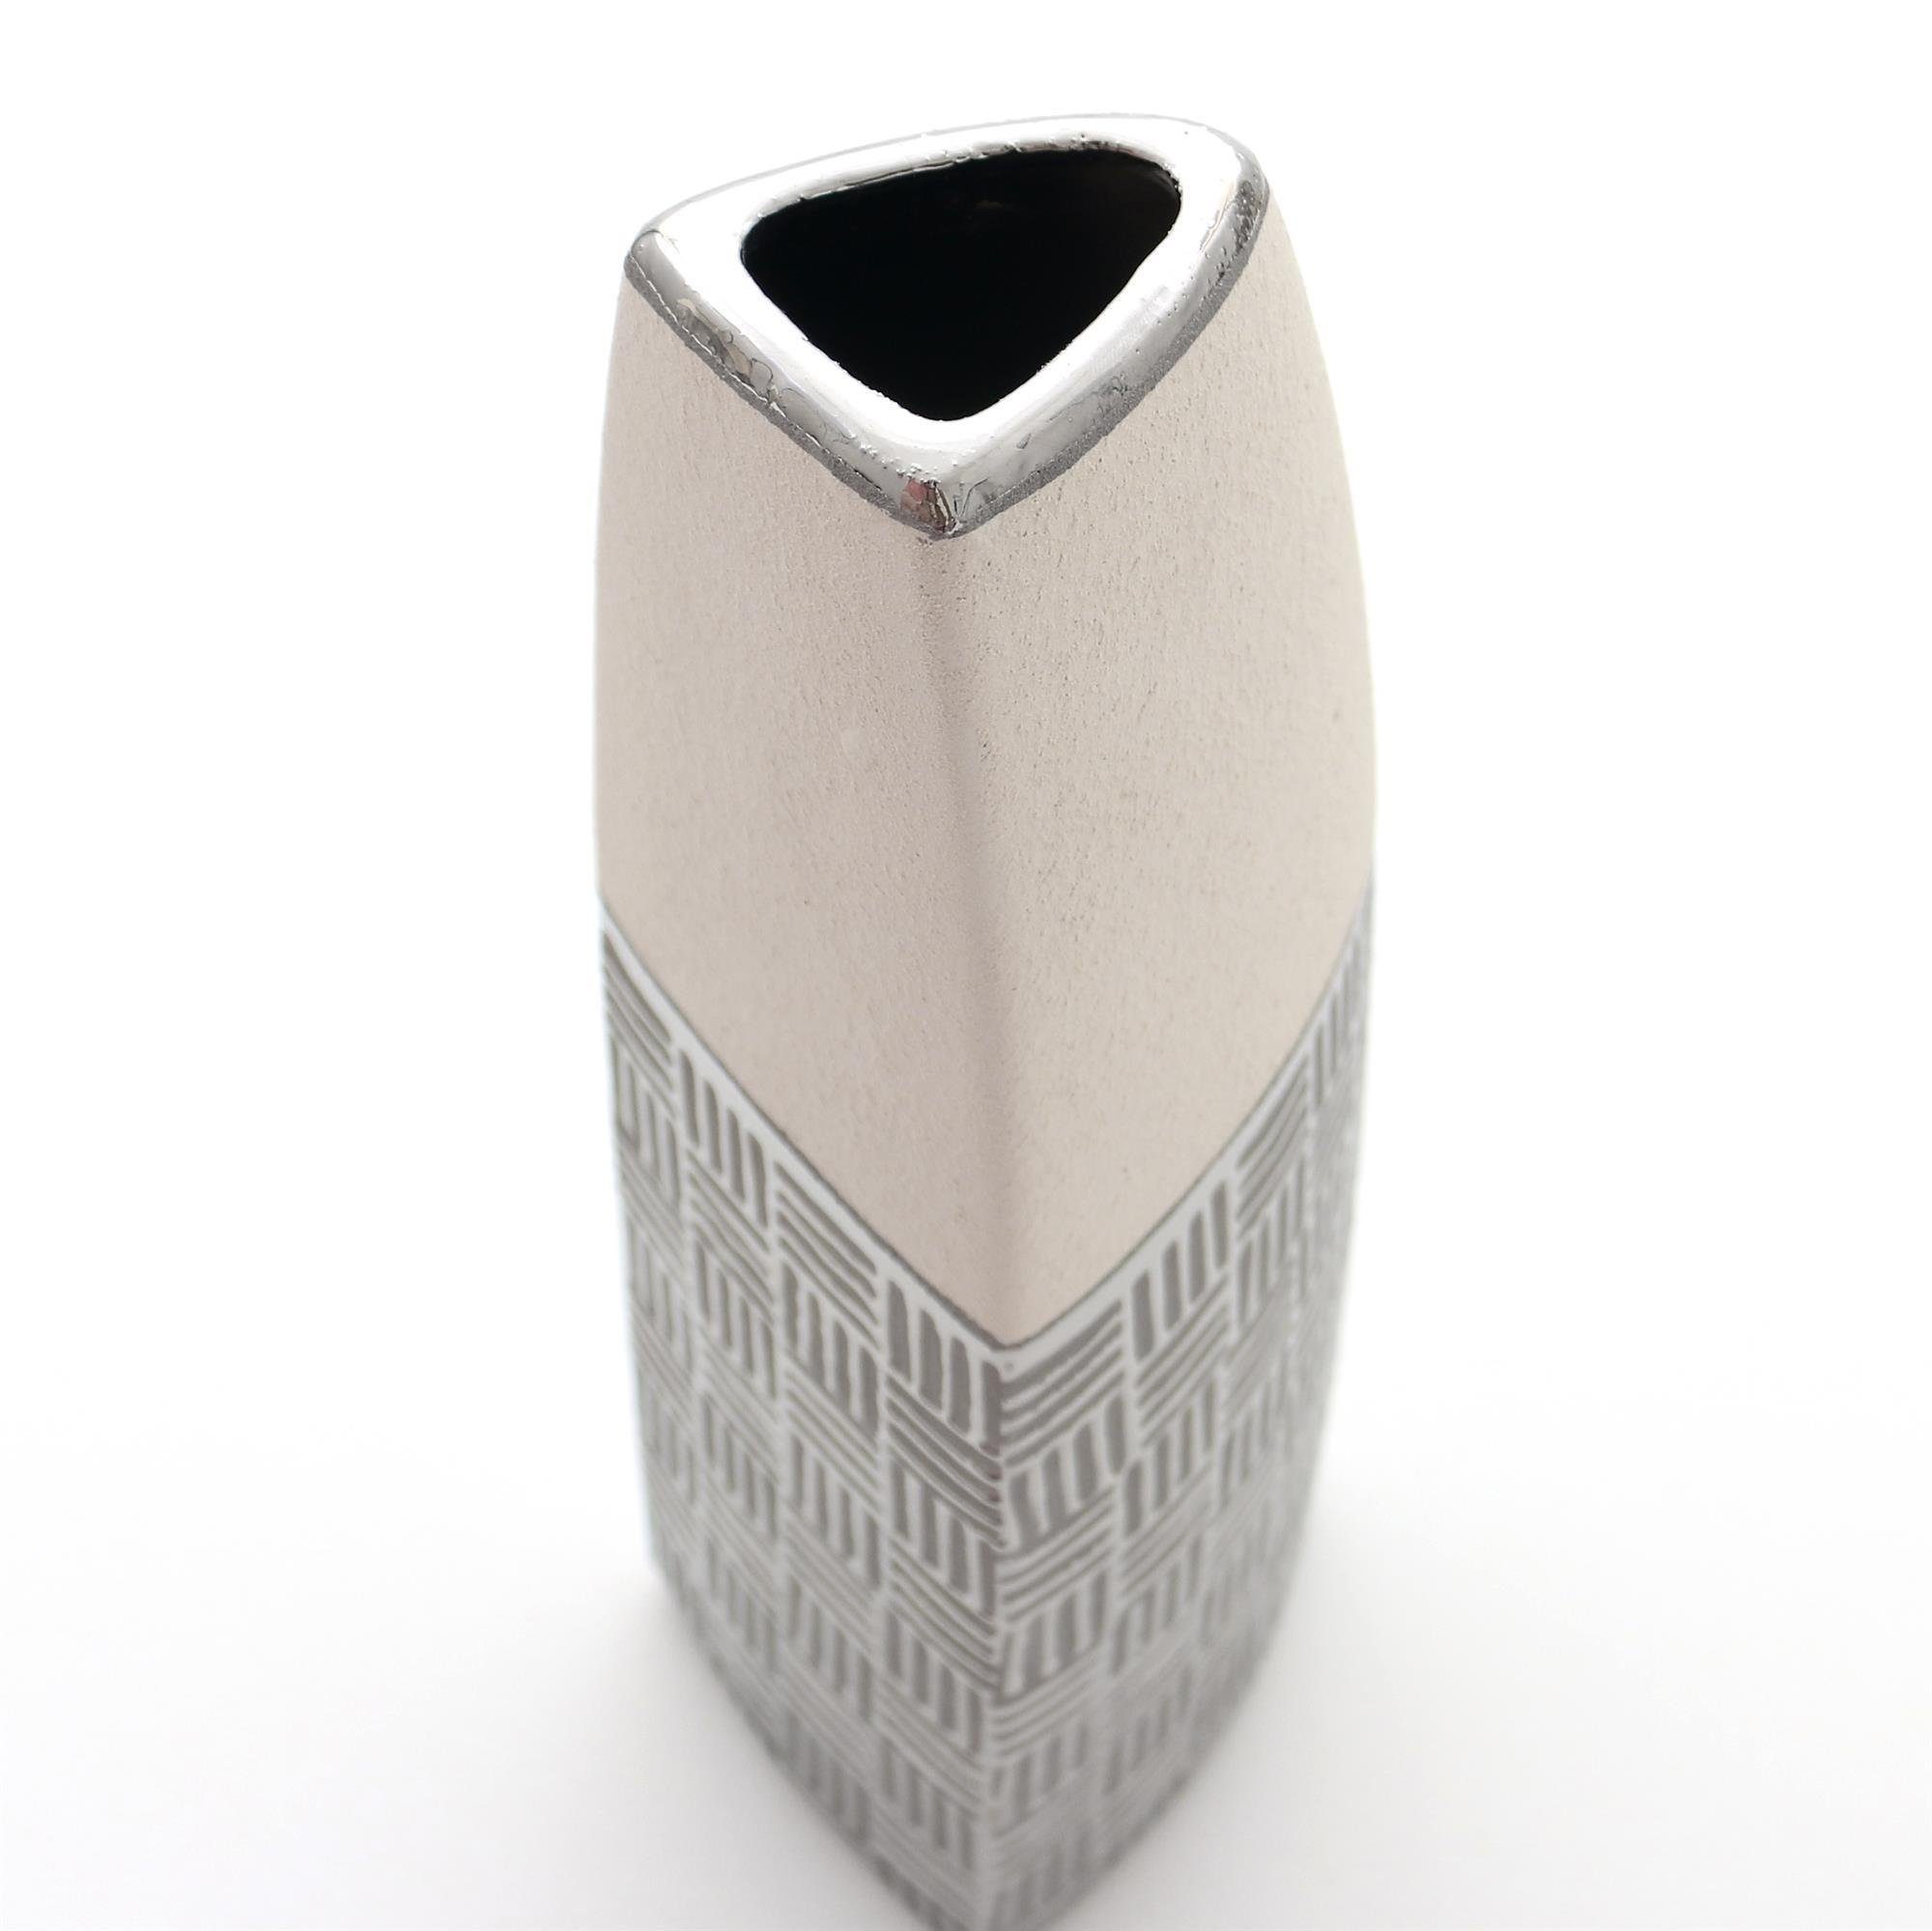 Dekohelden24 Dekovase St) in Segel Keramik weiß silber-grau Vase Edle (kein, Designer 1 moderne Deko